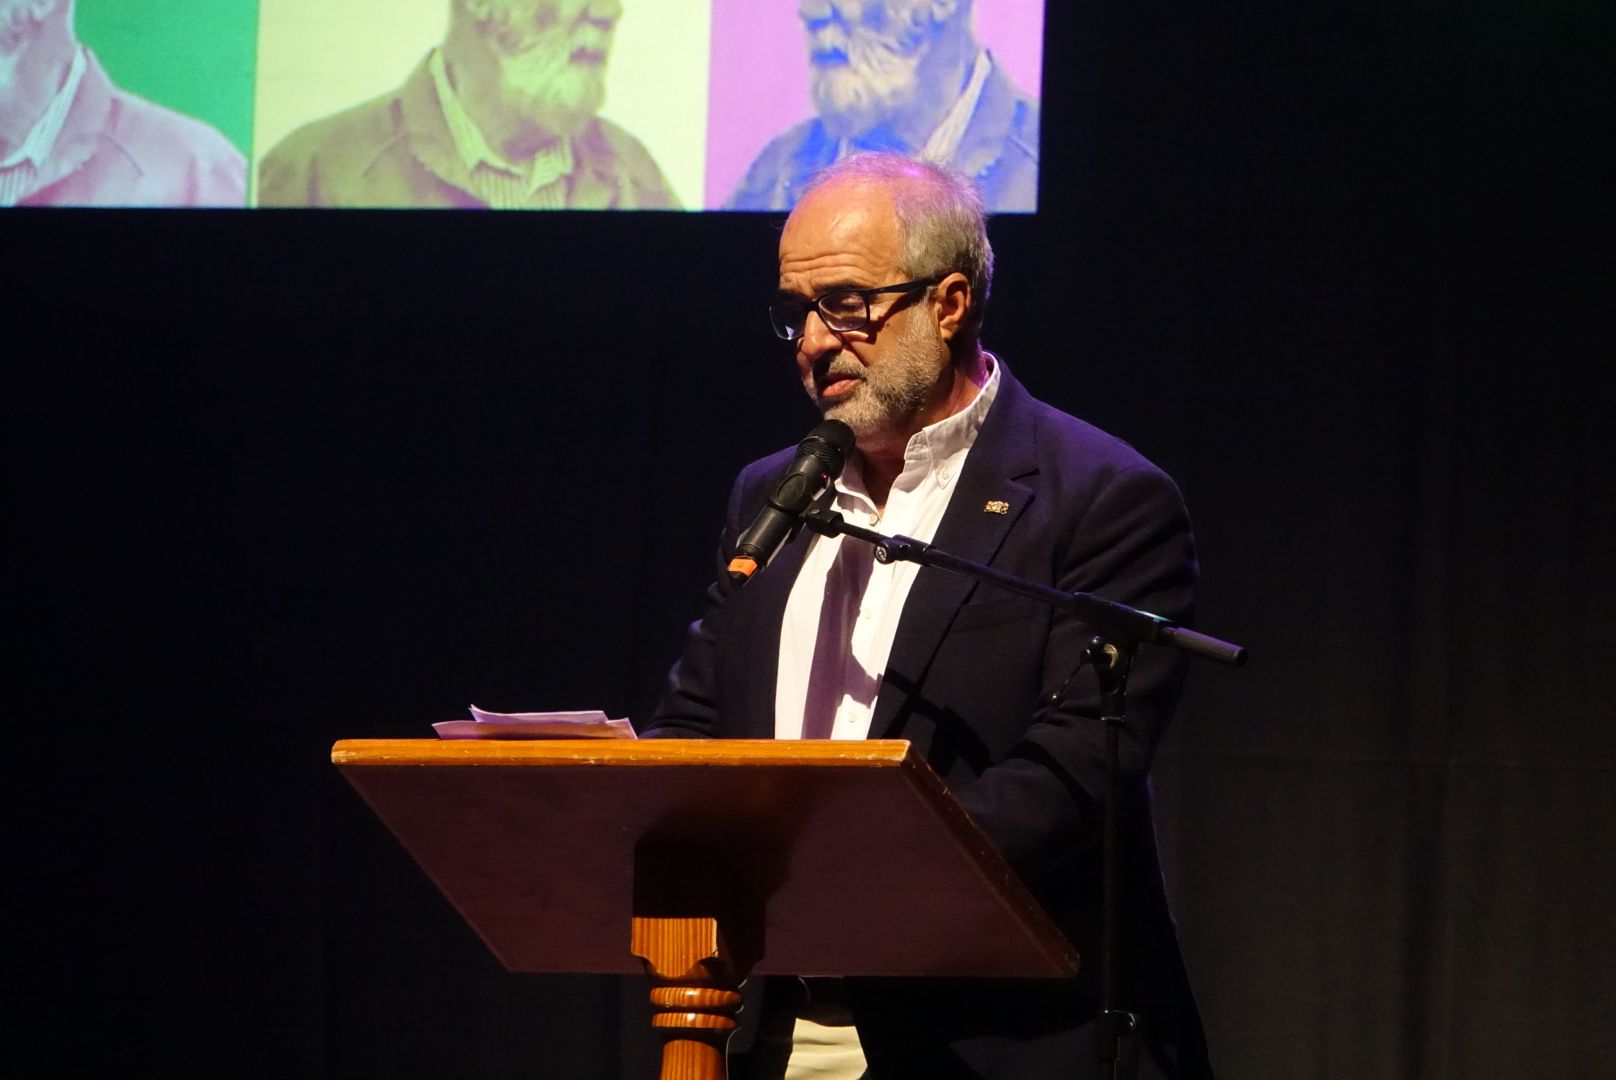 Rafael Sánchez Valerón, ‘Feluco’ recibe el homenaje de Ingenio